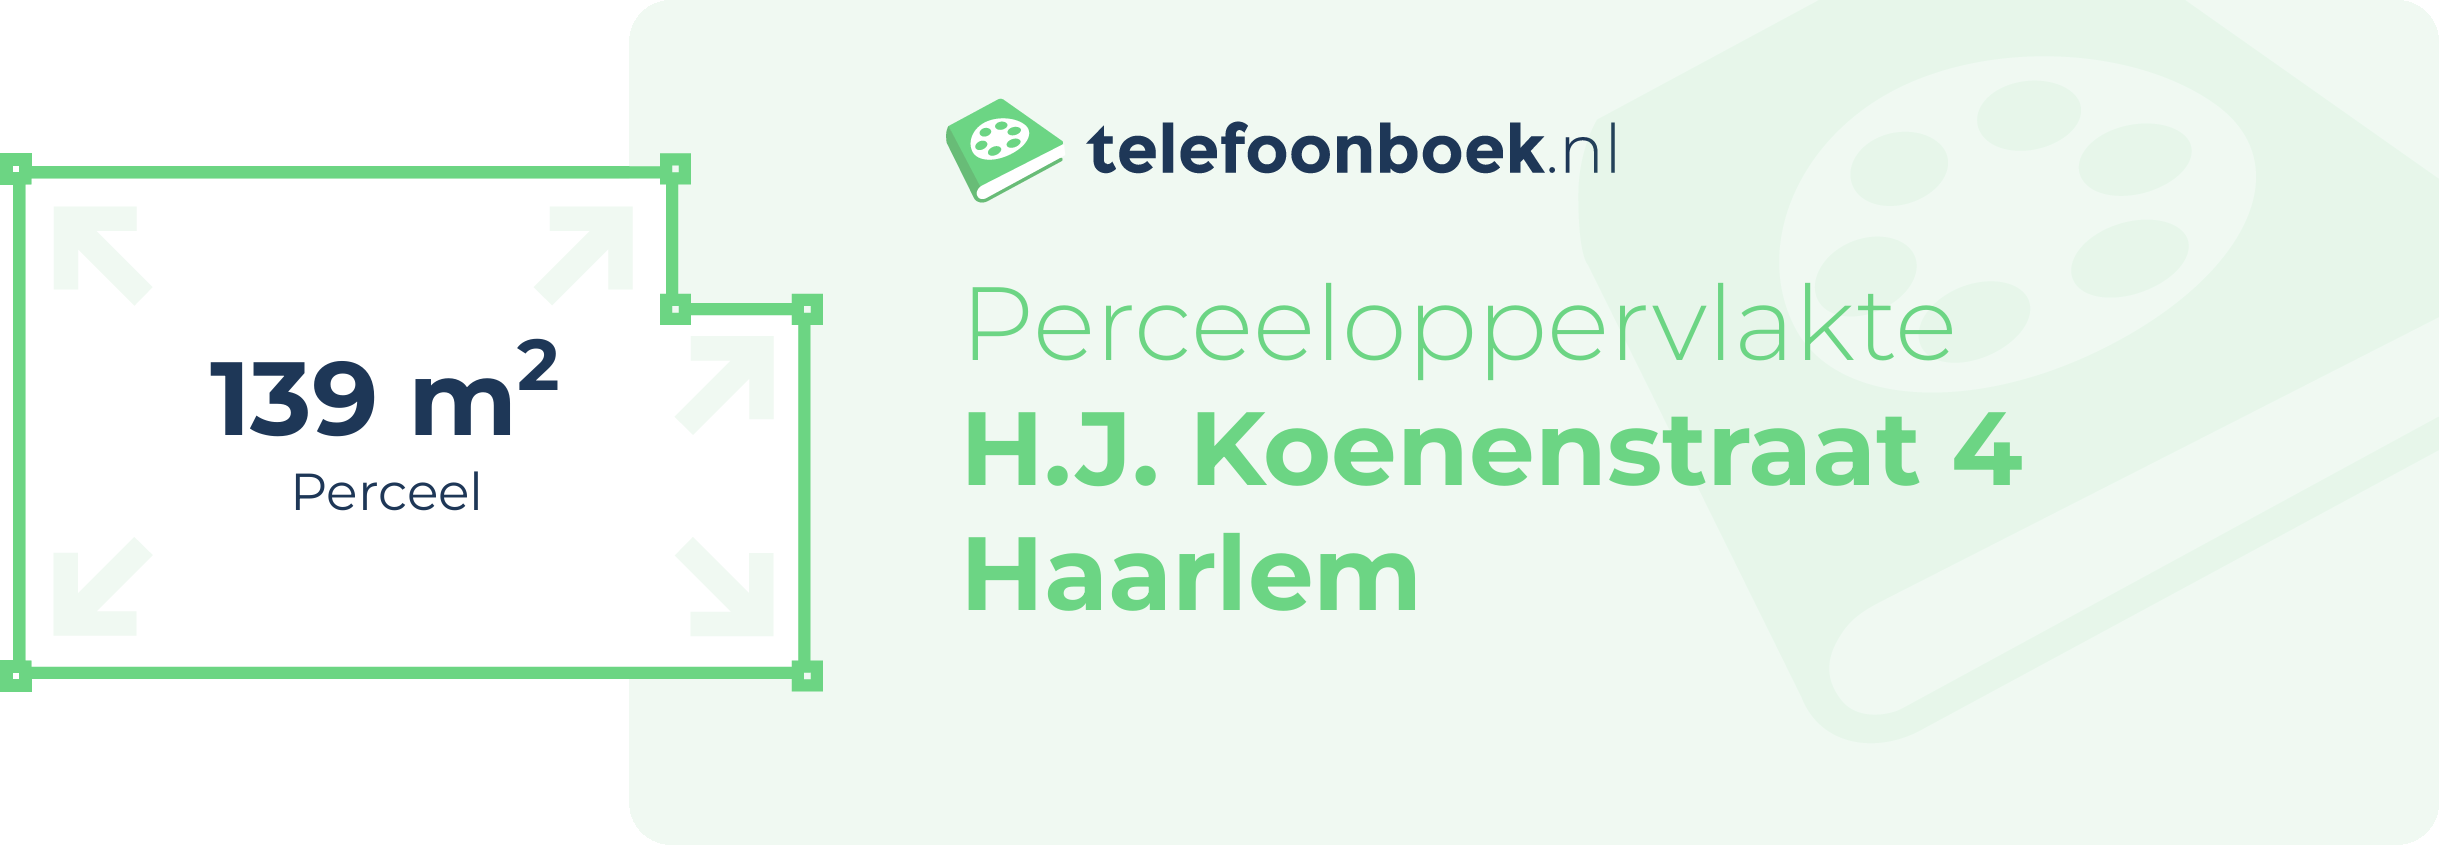 Perceeloppervlakte H.J. Koenenstraat 4 Haarlem